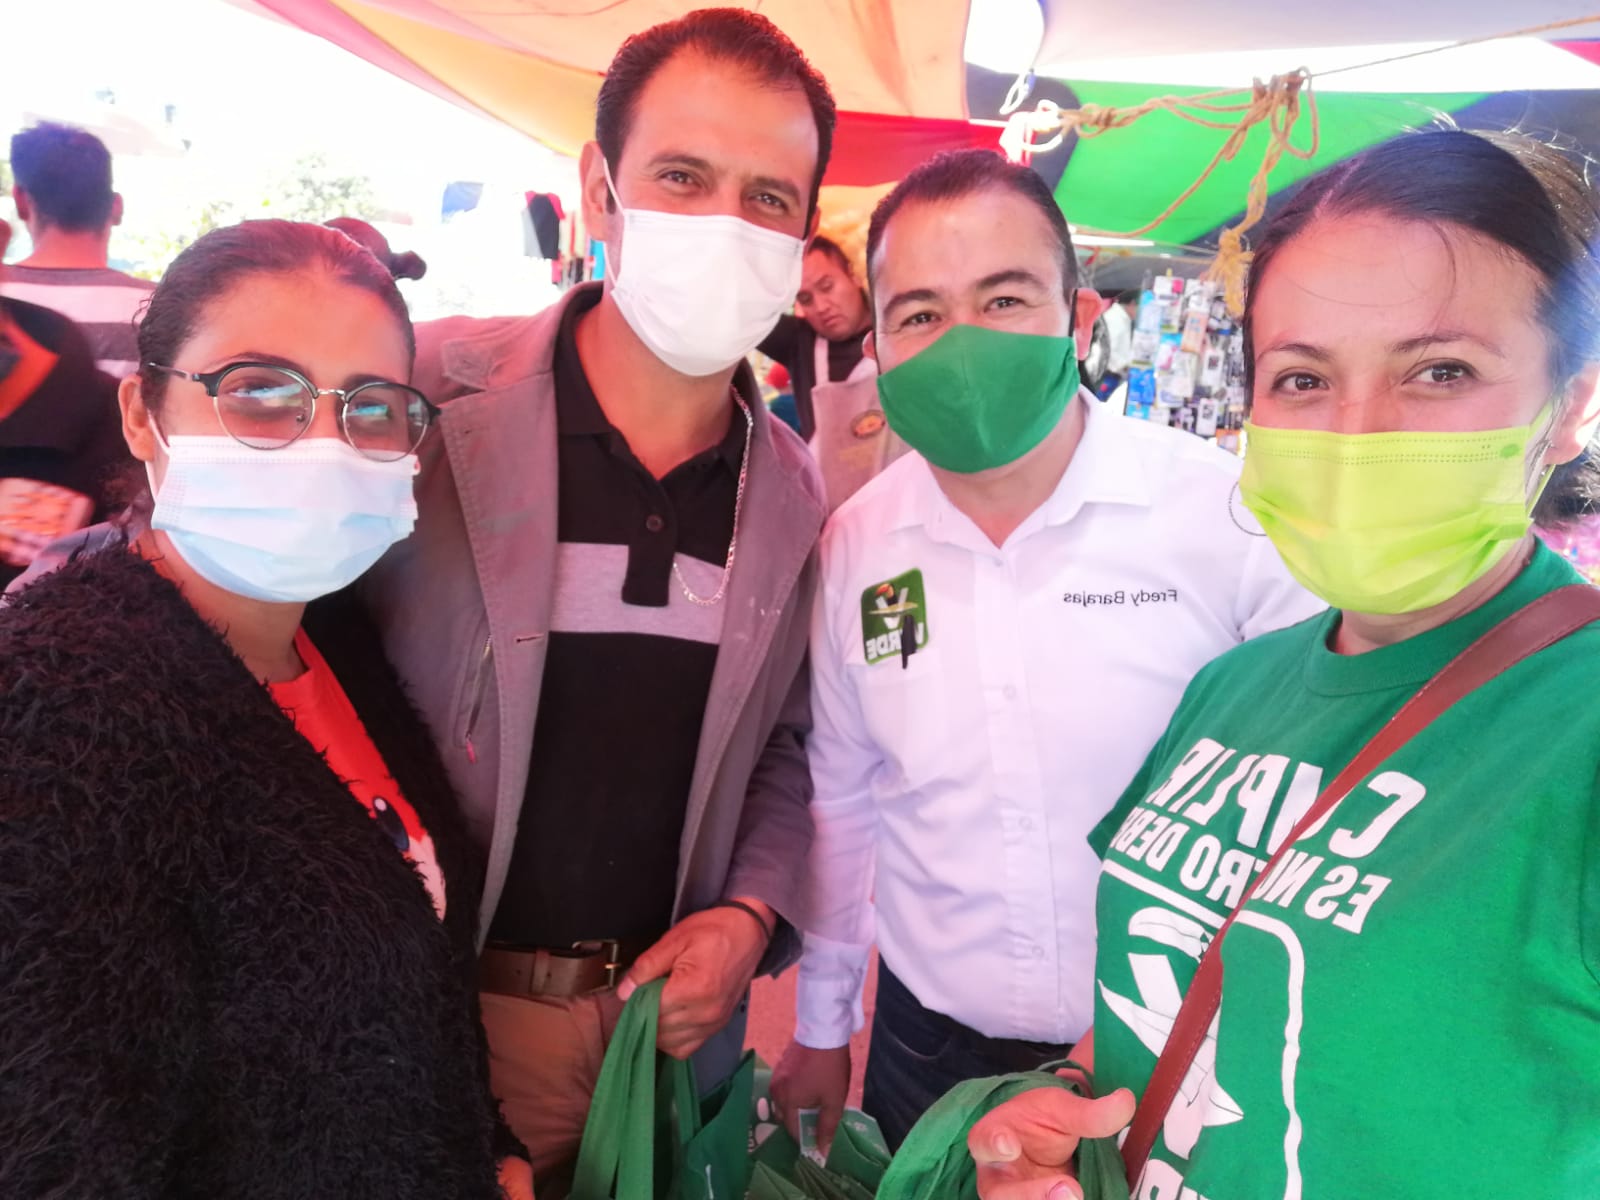 Plantea Fredy Barajas propuestas para combatir desempleo en Guadalupe